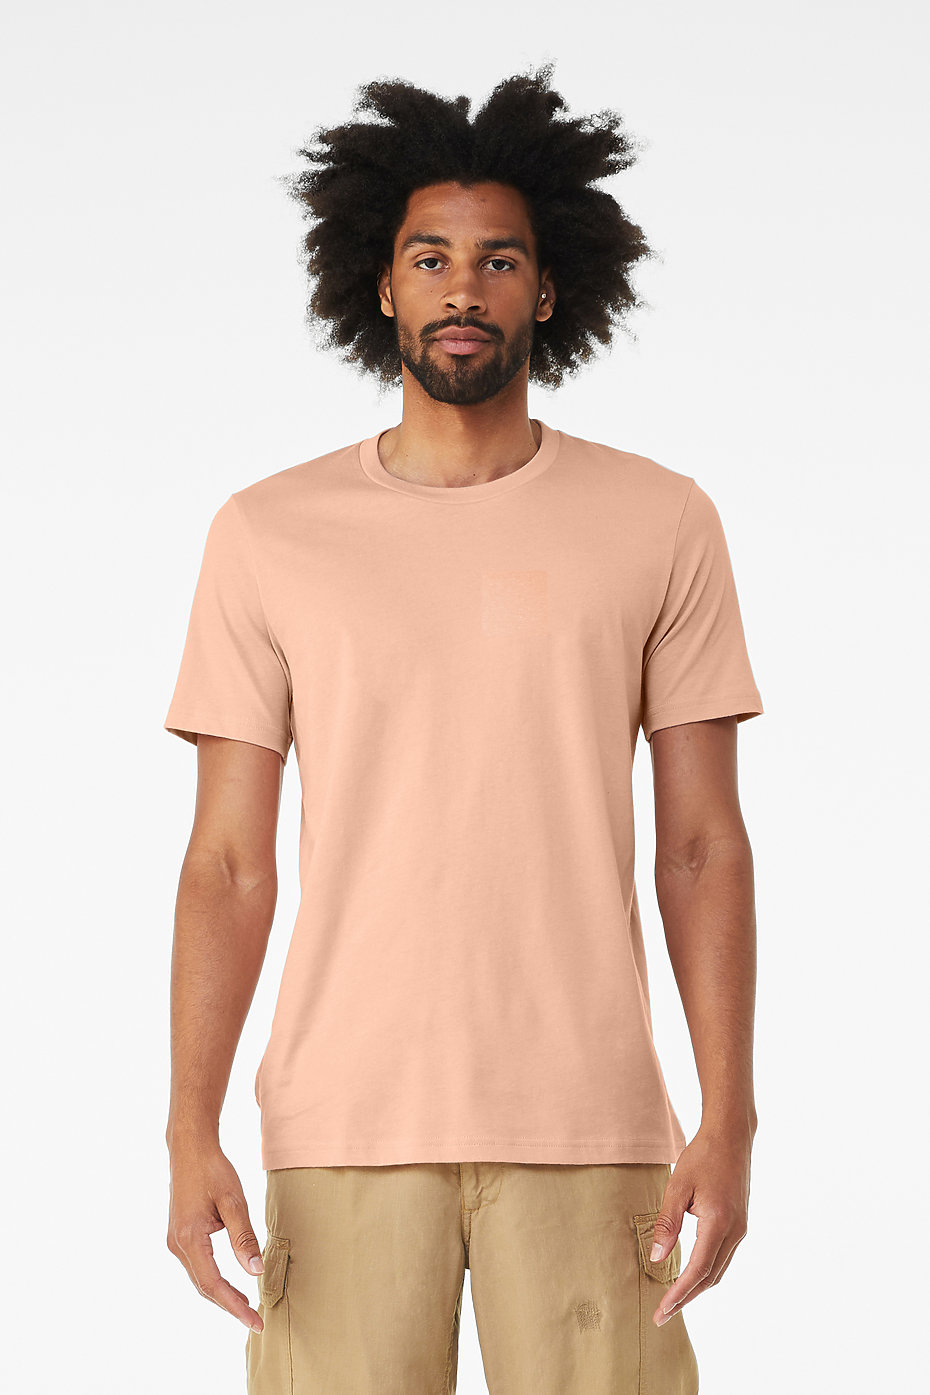 Unisex Jersey Short Sleeve Tee | Jersey T Shirt | Wholesale Blank T Shirts  | Unisex Short Sleeve T Shirts | Bulk, Plain T Shirts | BELLA+CANVAS ®